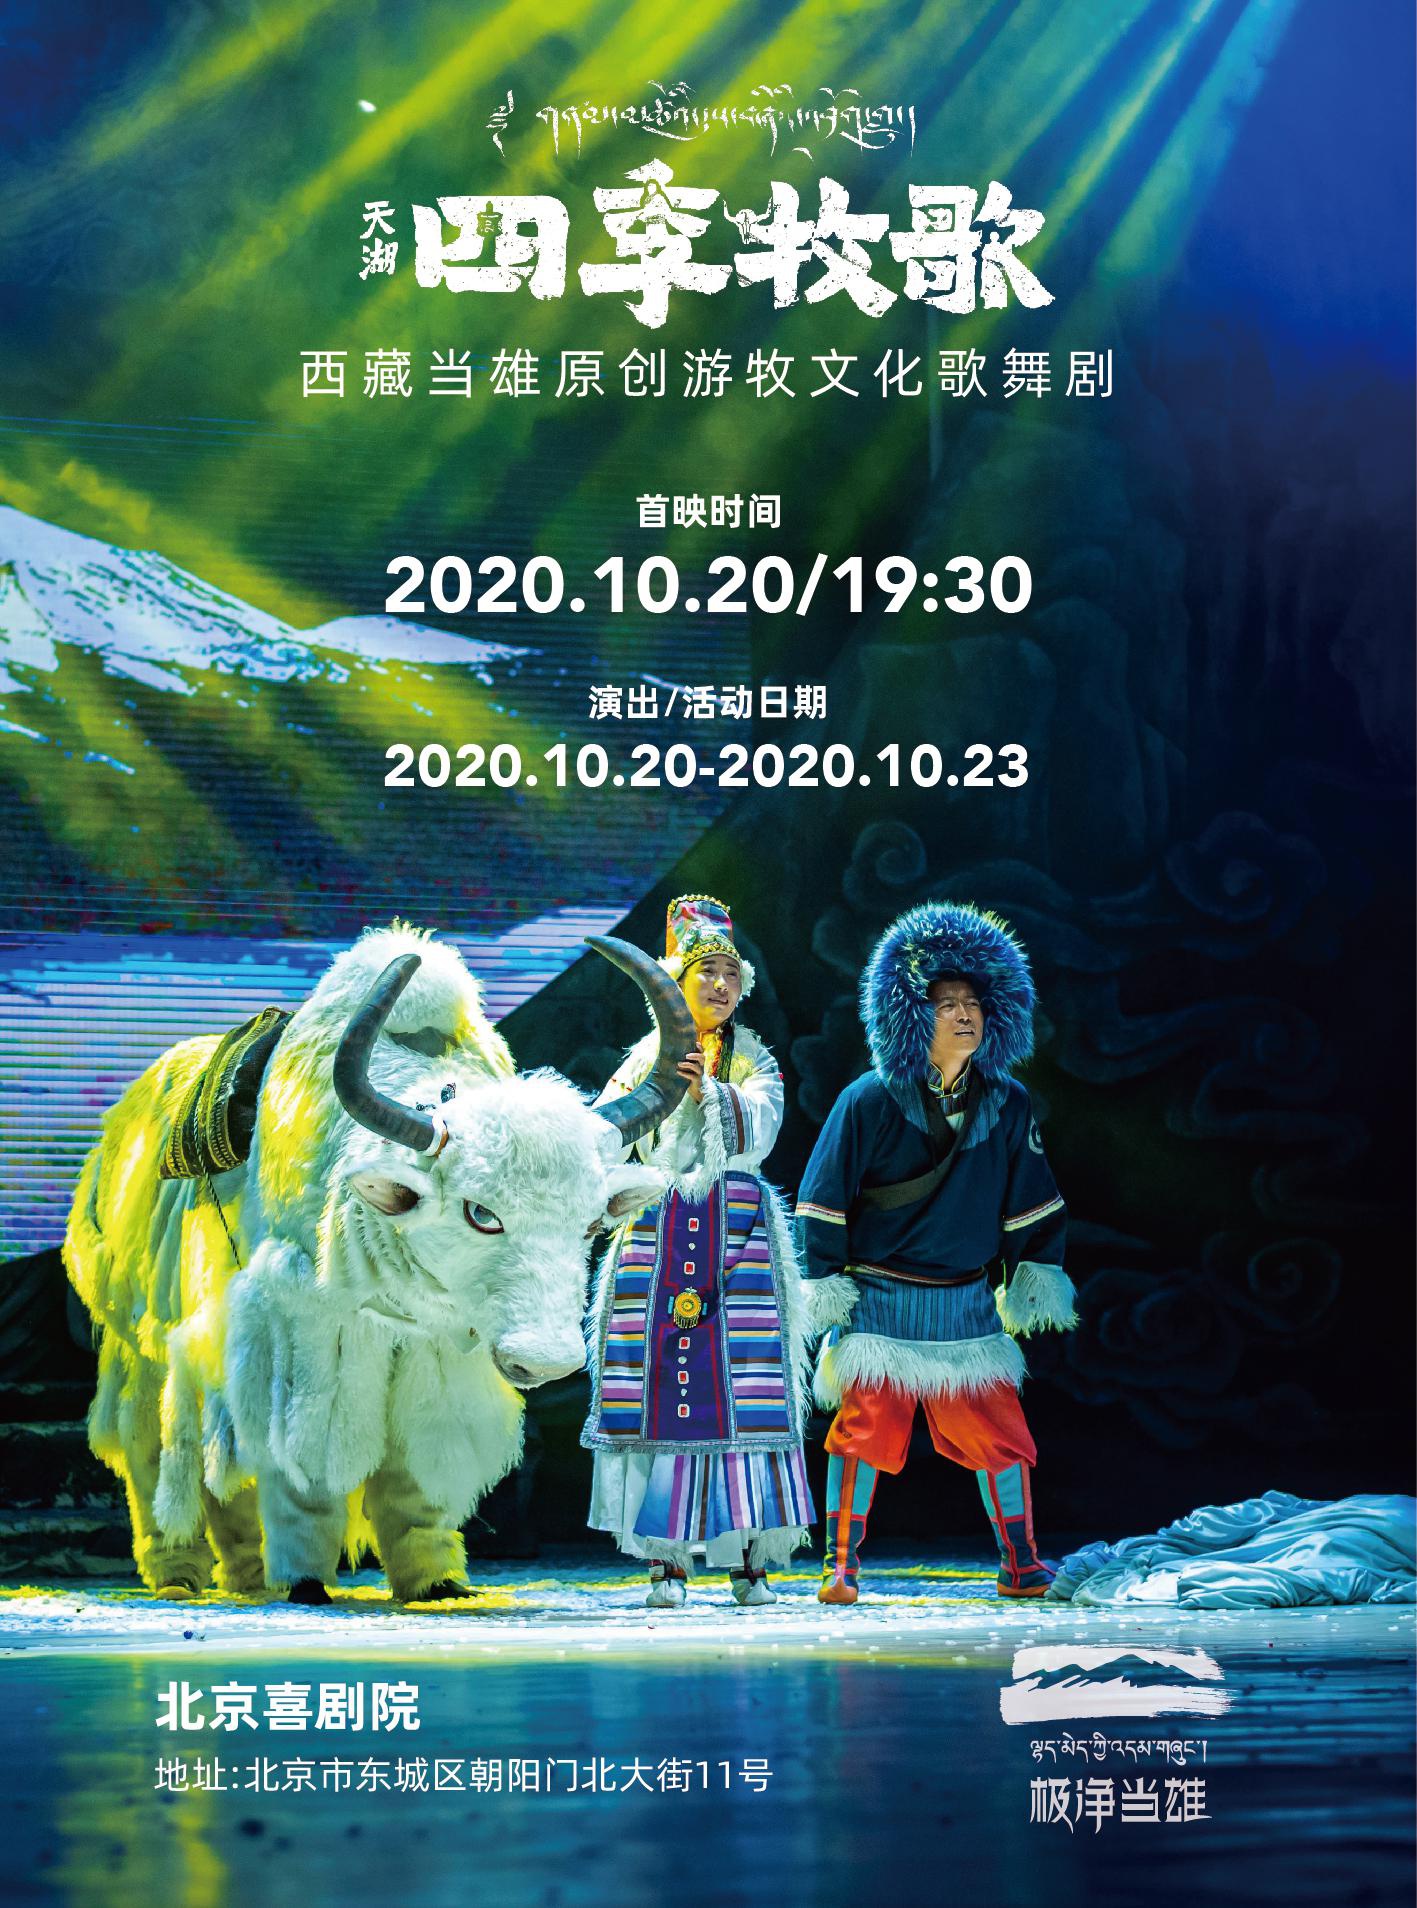 当雄的演员将在北京喜剧院带来当地原创游牧文化歌舞剧《天湖·四季牧歌》。图为演出海报。东城区供图